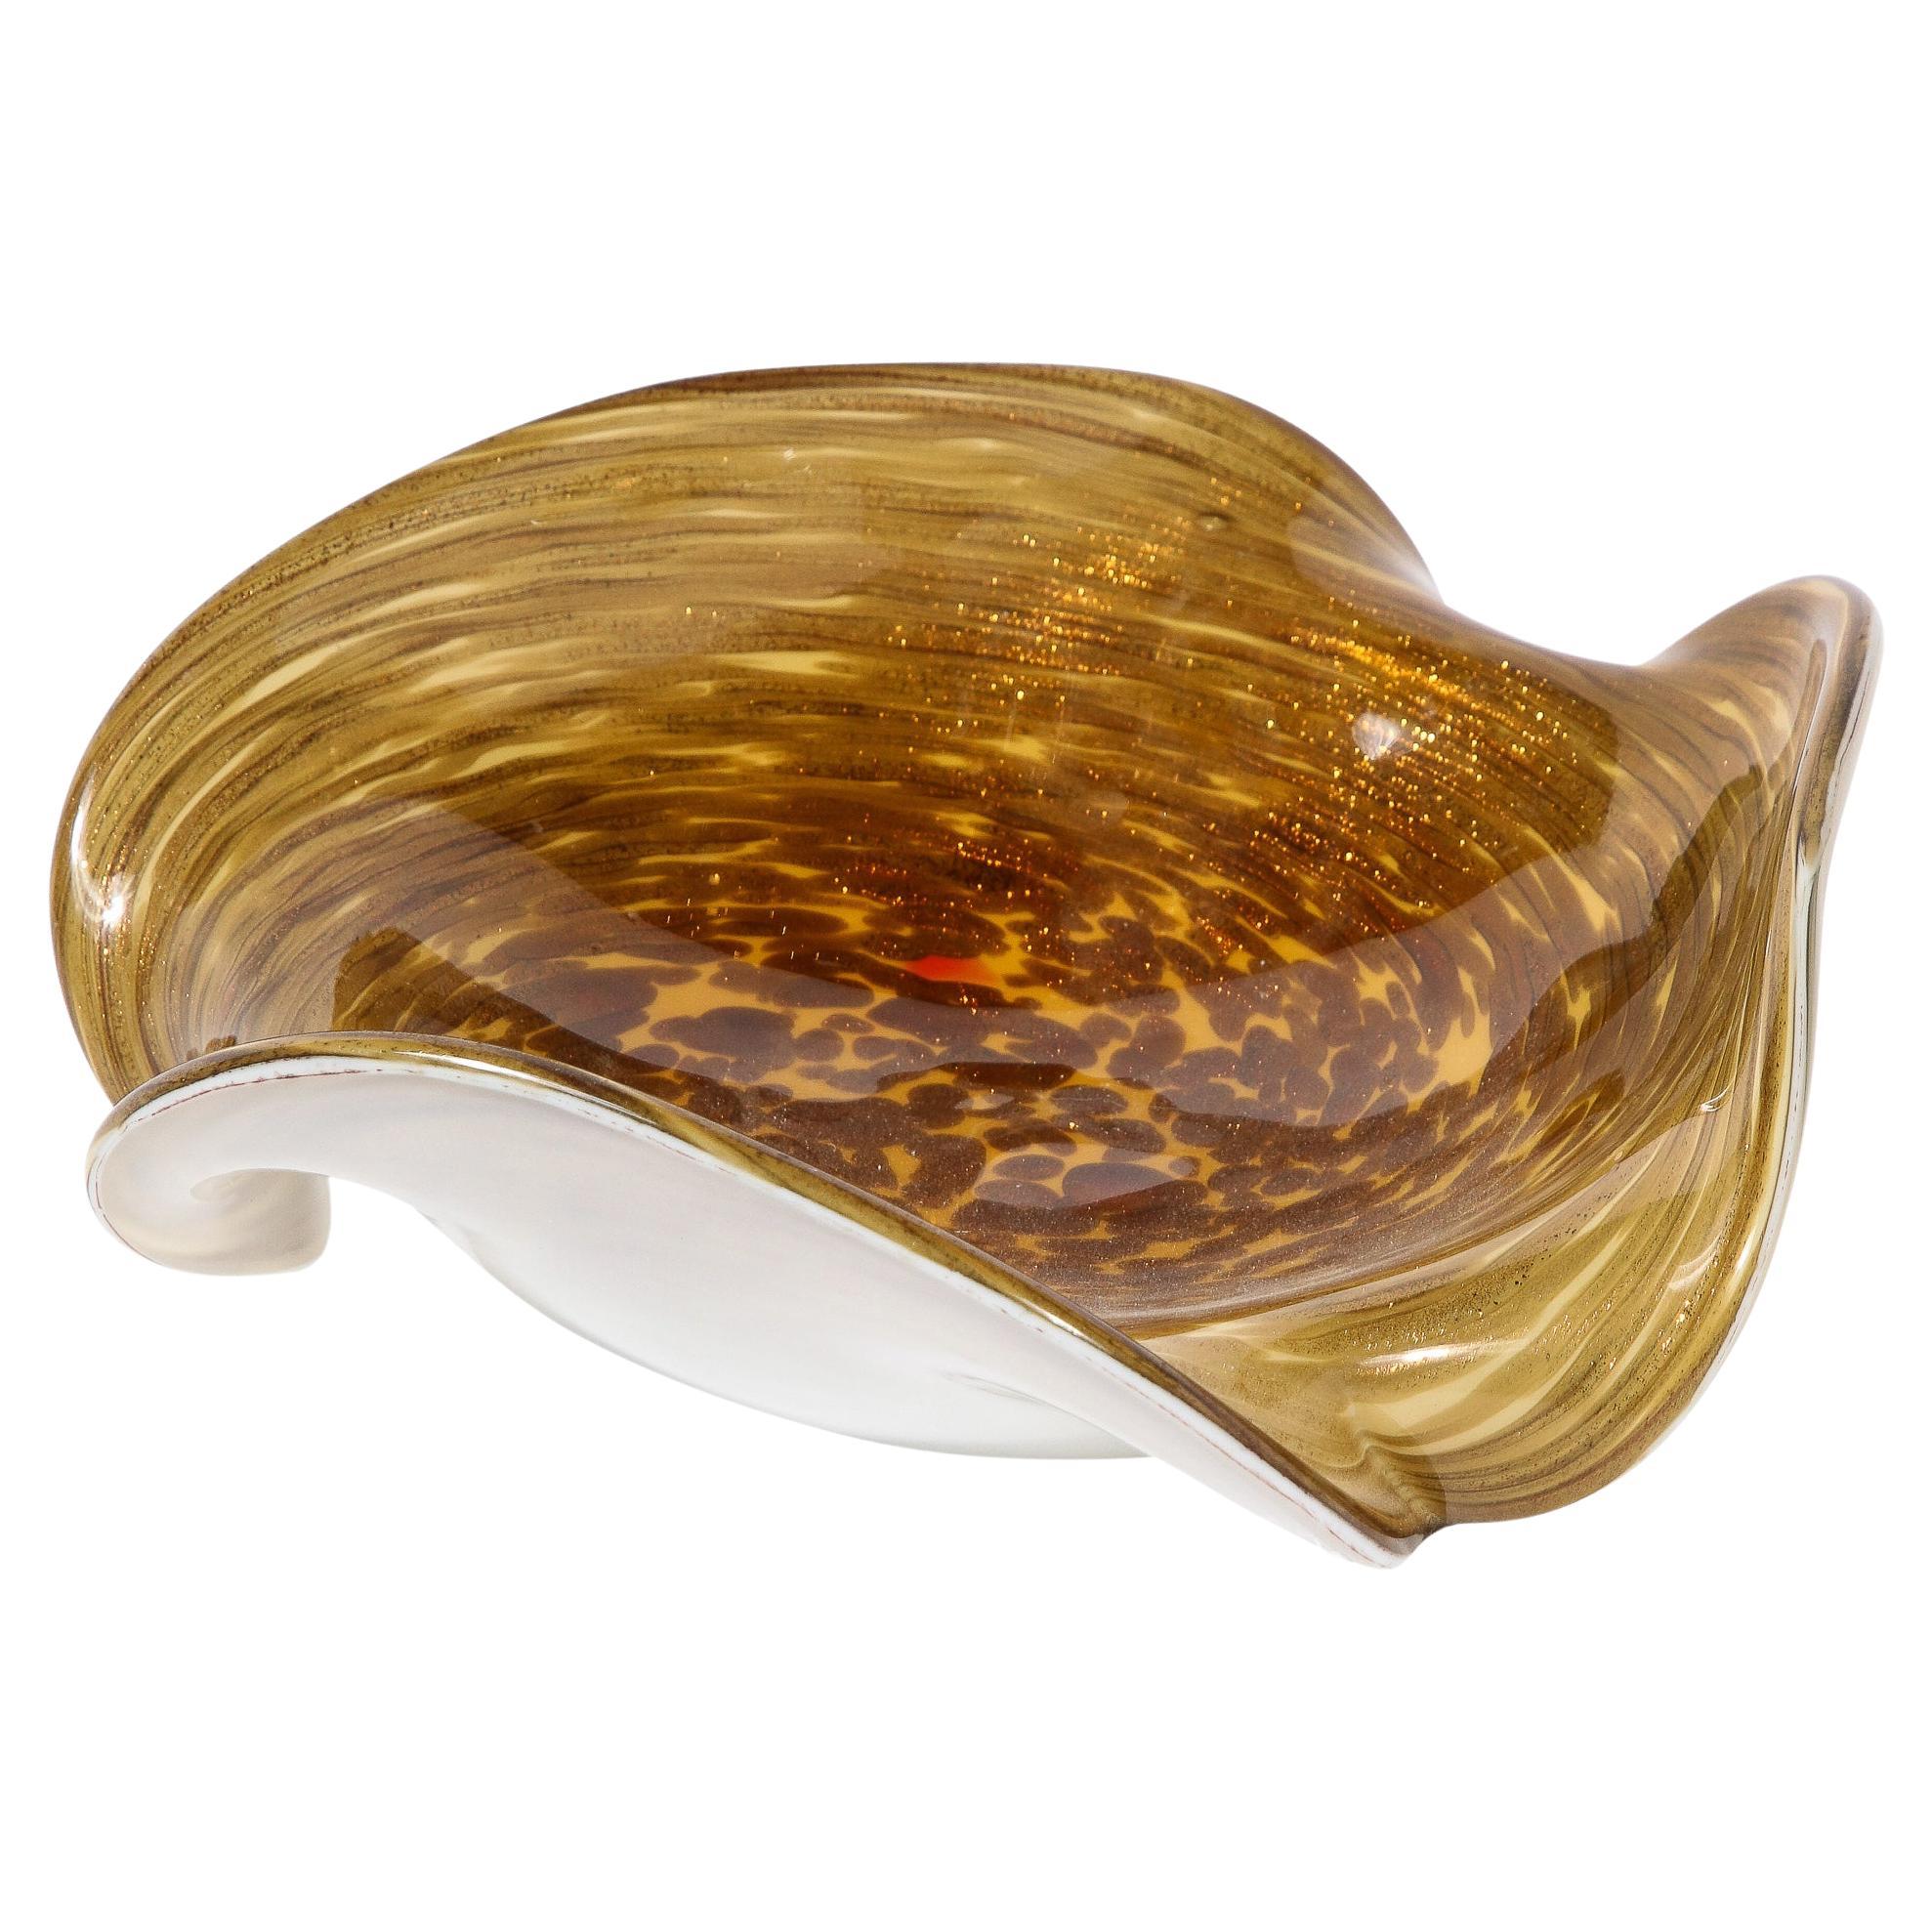 Plat en verre de Murano soufflé à la main, moderniste du milieu du siècle, en ocre jaune spiralé